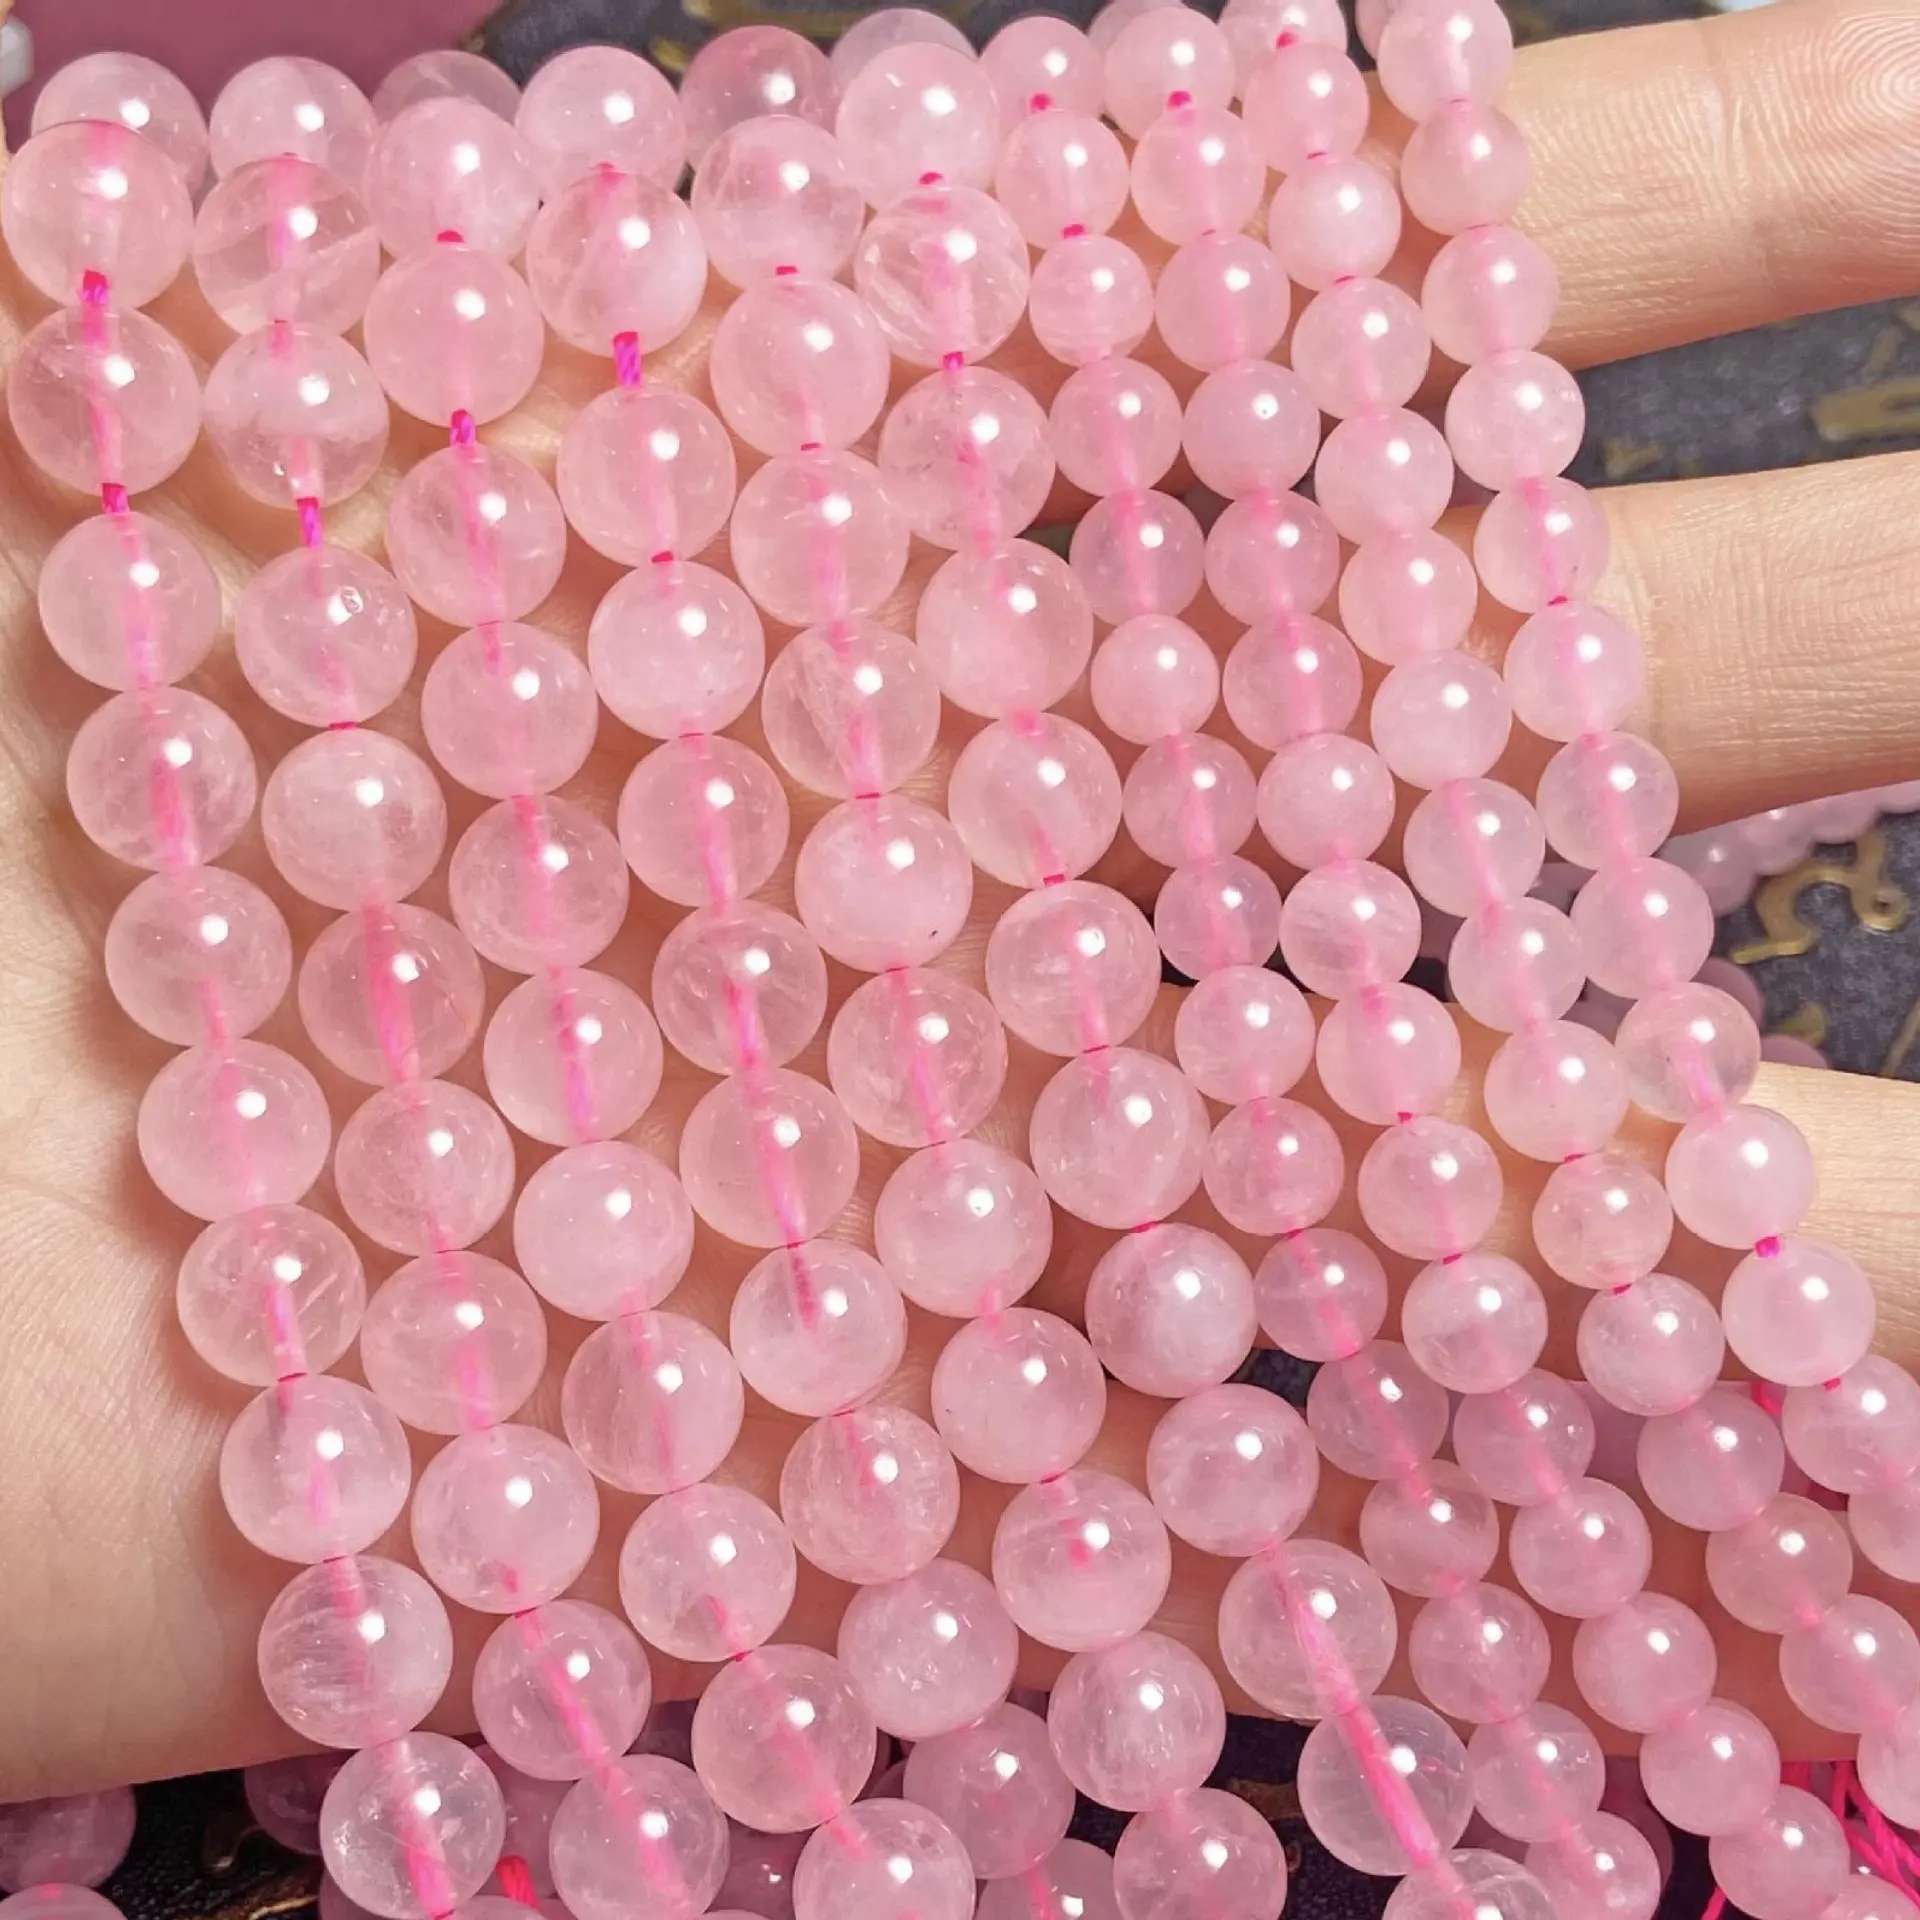 Vendita all'ingrosso di perle sciolte di pietre preziose di quarzo rosa naturale per la creazione di gioielli fai da te artigianato fatto a mano 12mm rosa perline